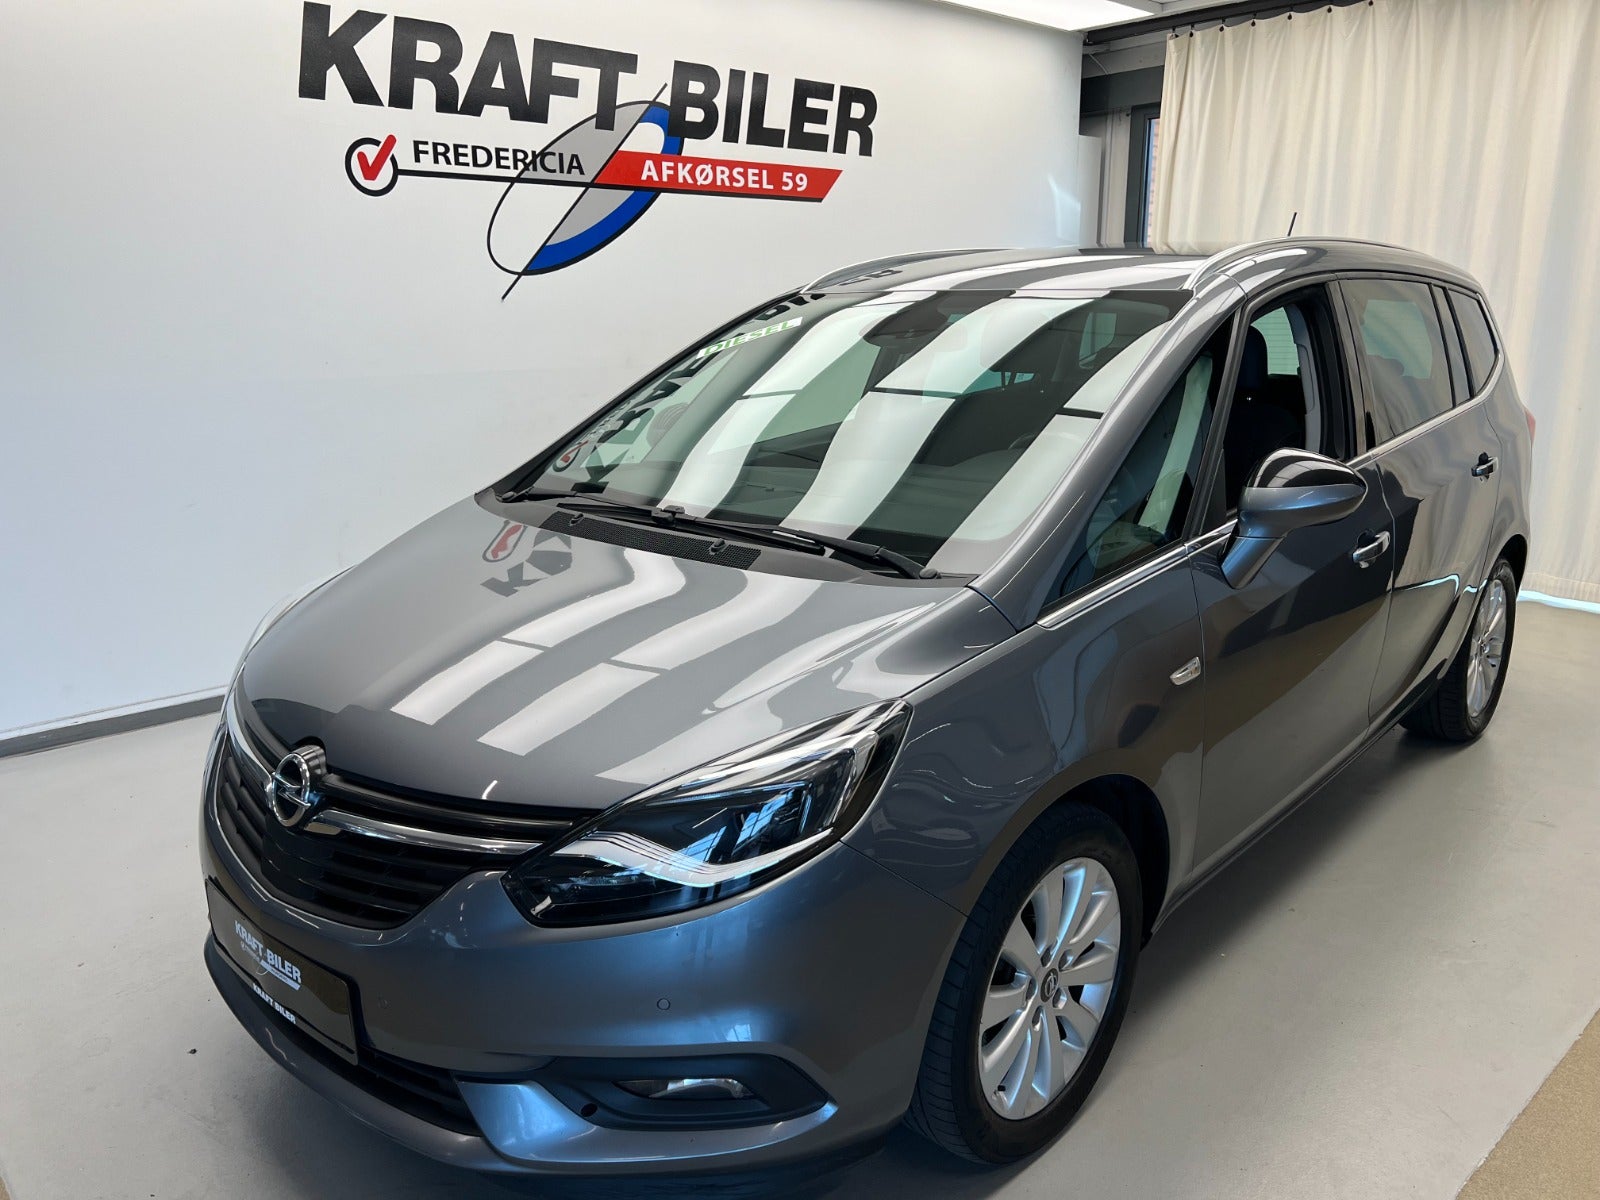 Billede af Opel Zafira Tourer 1,6 CDTi 134 Innovation 7prs